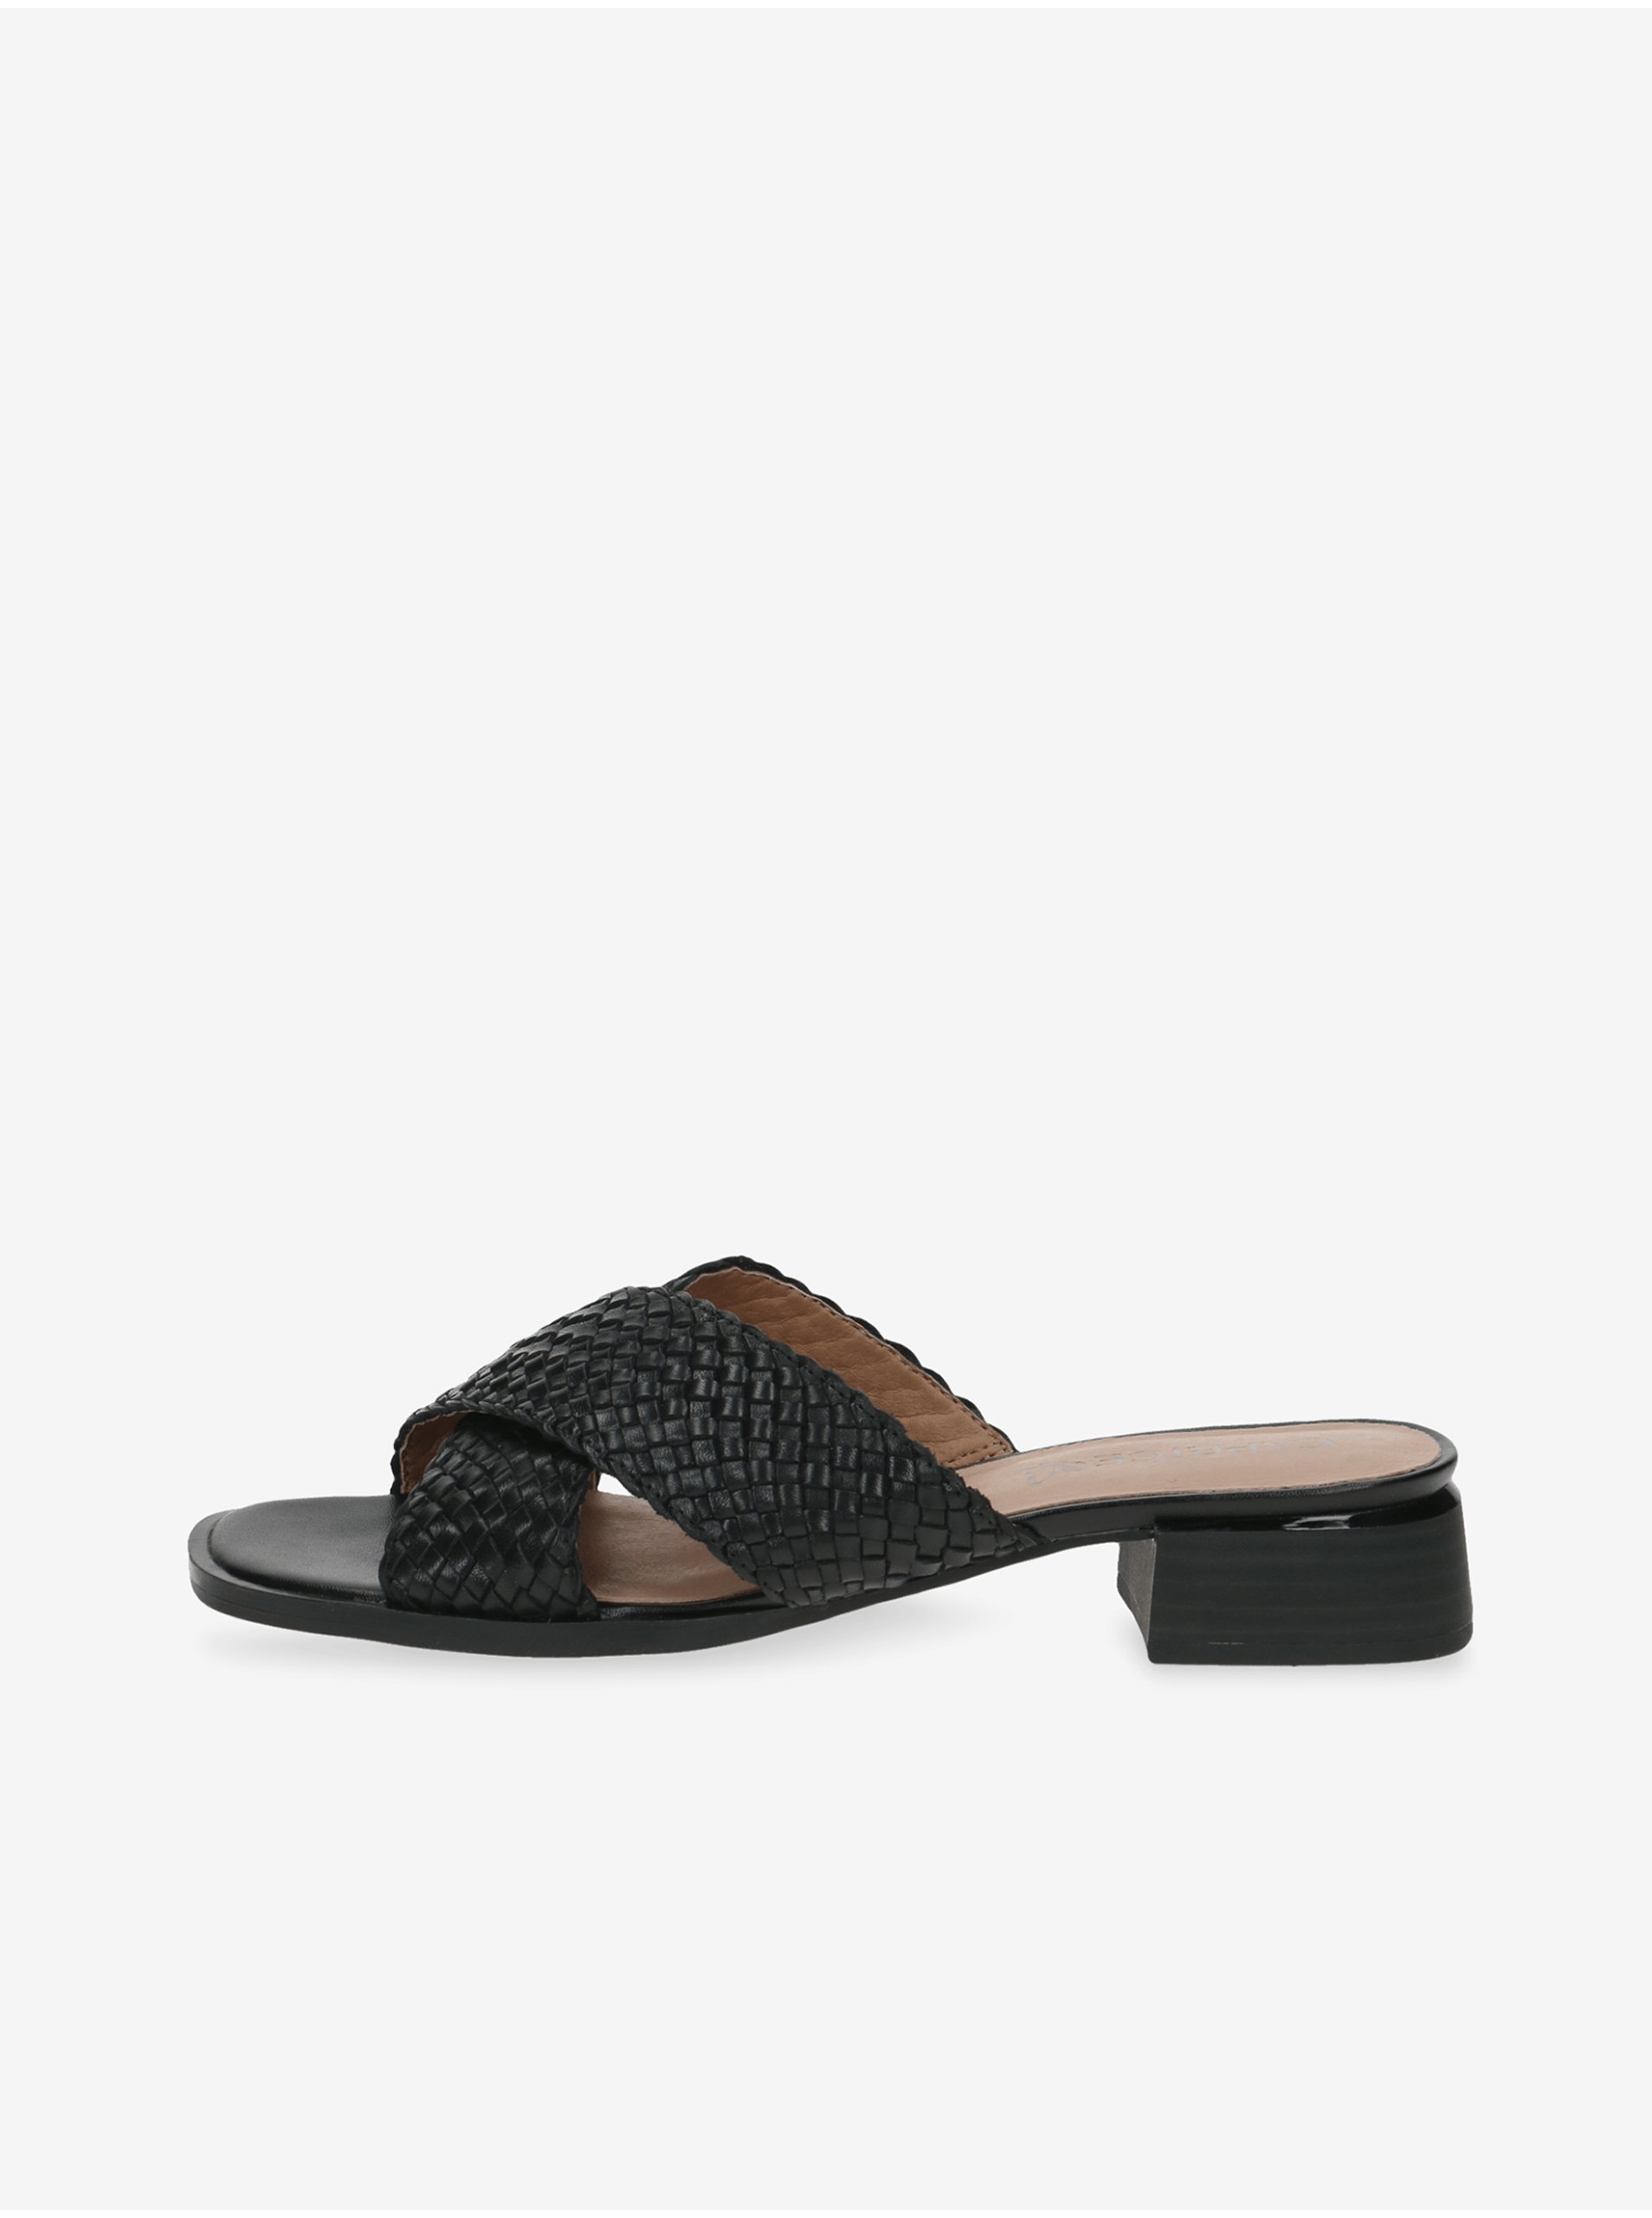 E-shop Černé dámské kožené pantofle na nízkém podpatku Caprice